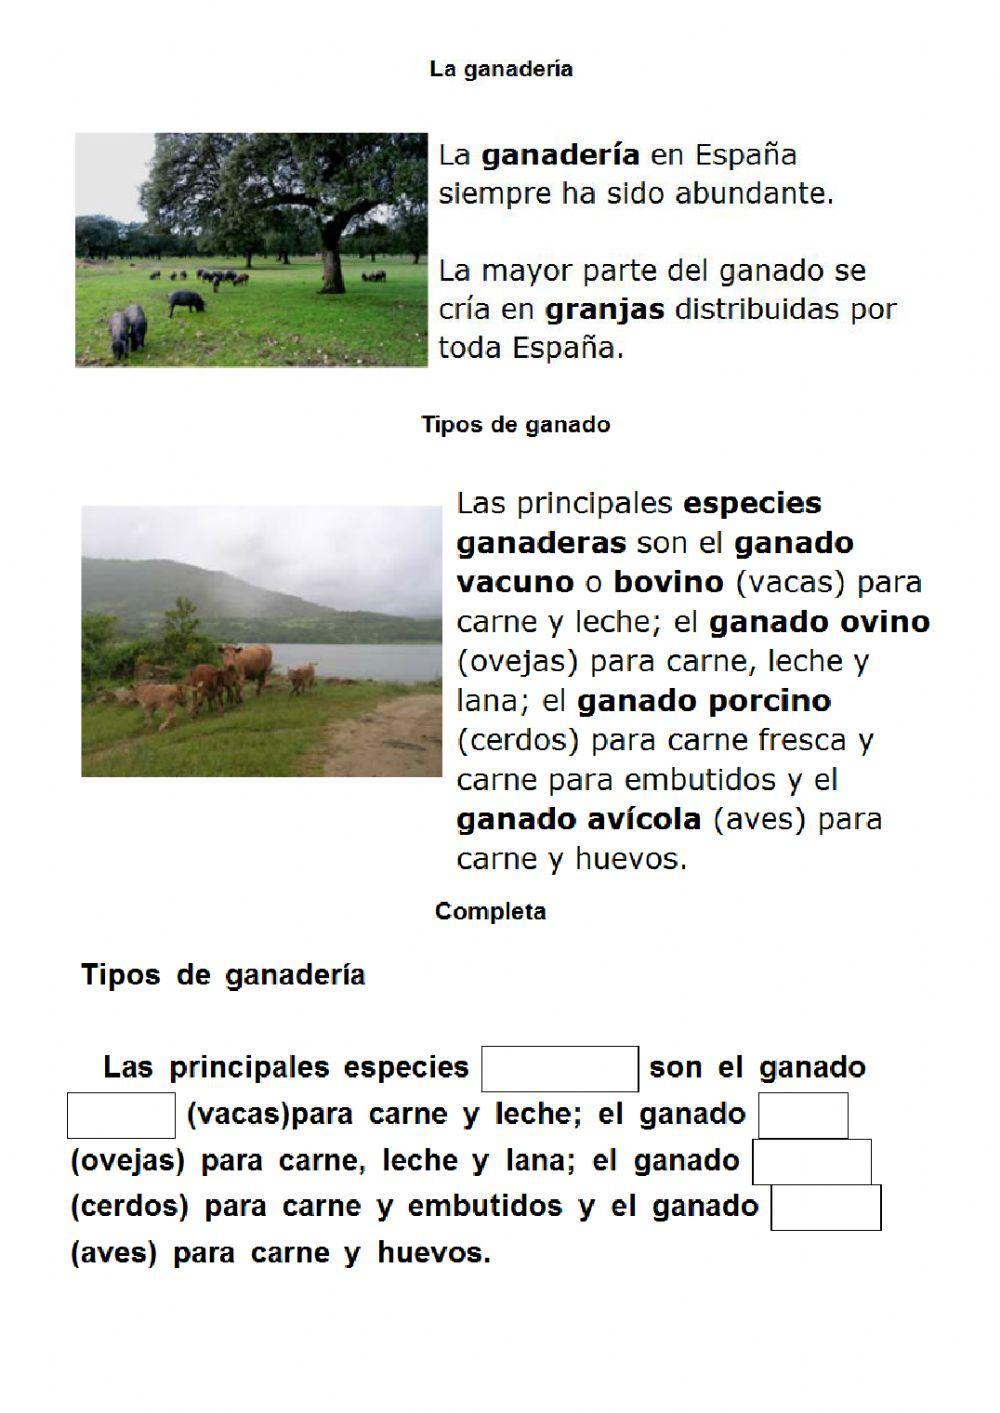 Agricultura y ganadería